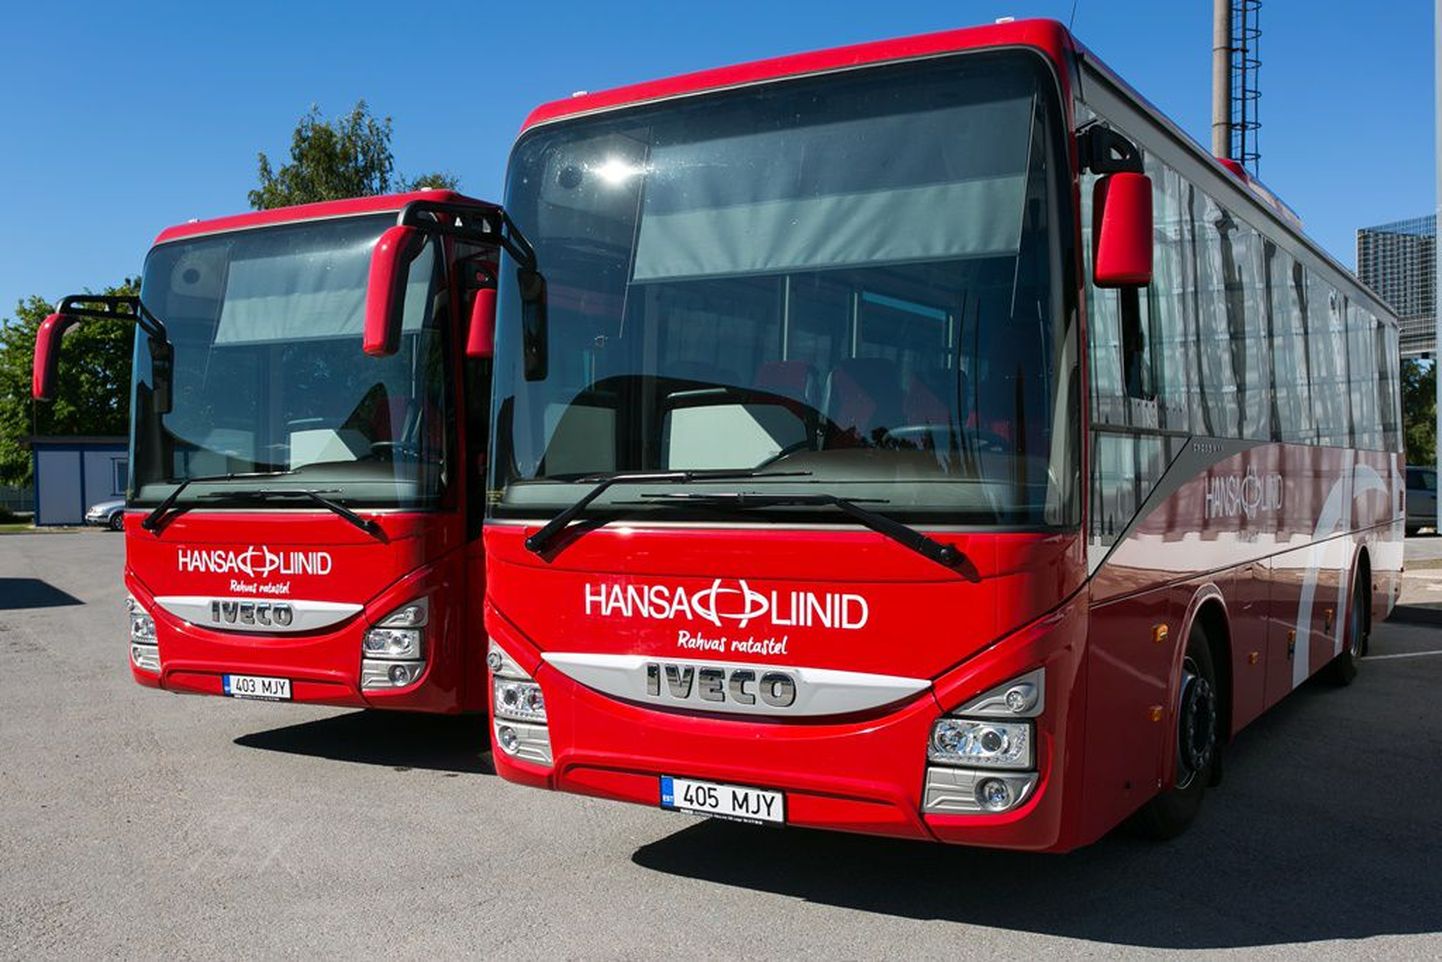 Hansa Bussiliinide bussid.